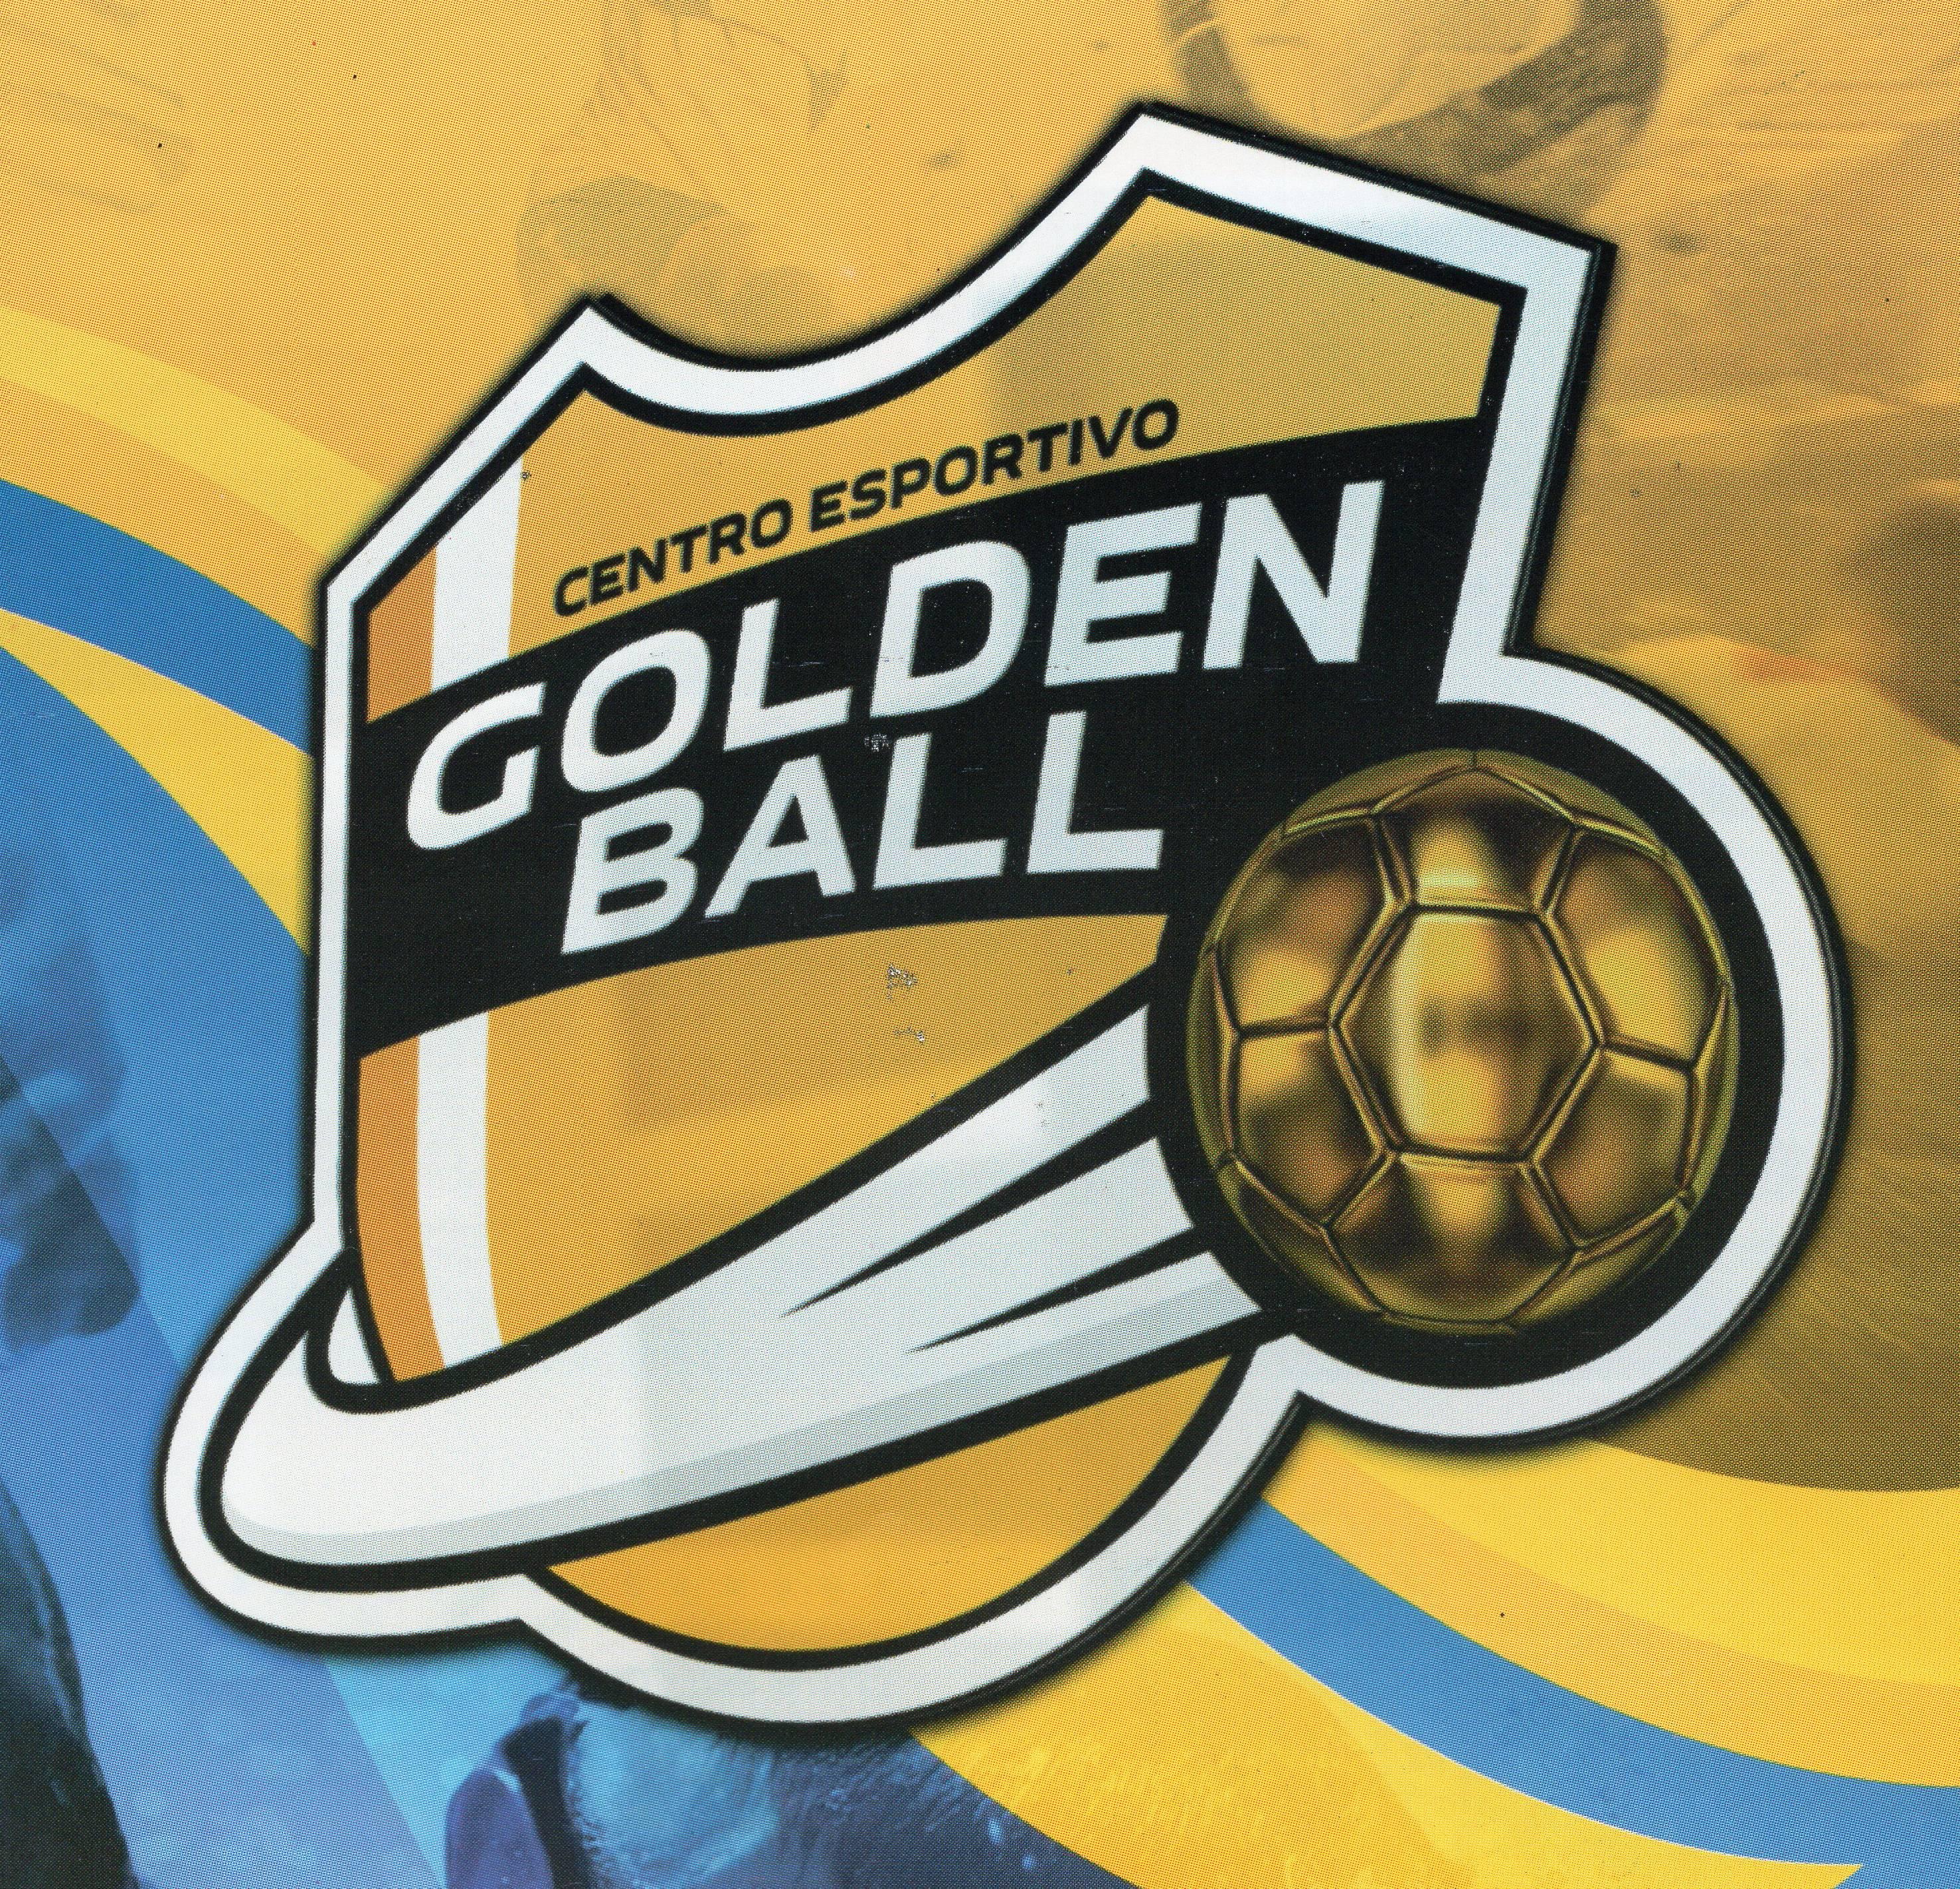 Centro Esportivo Golden Ball